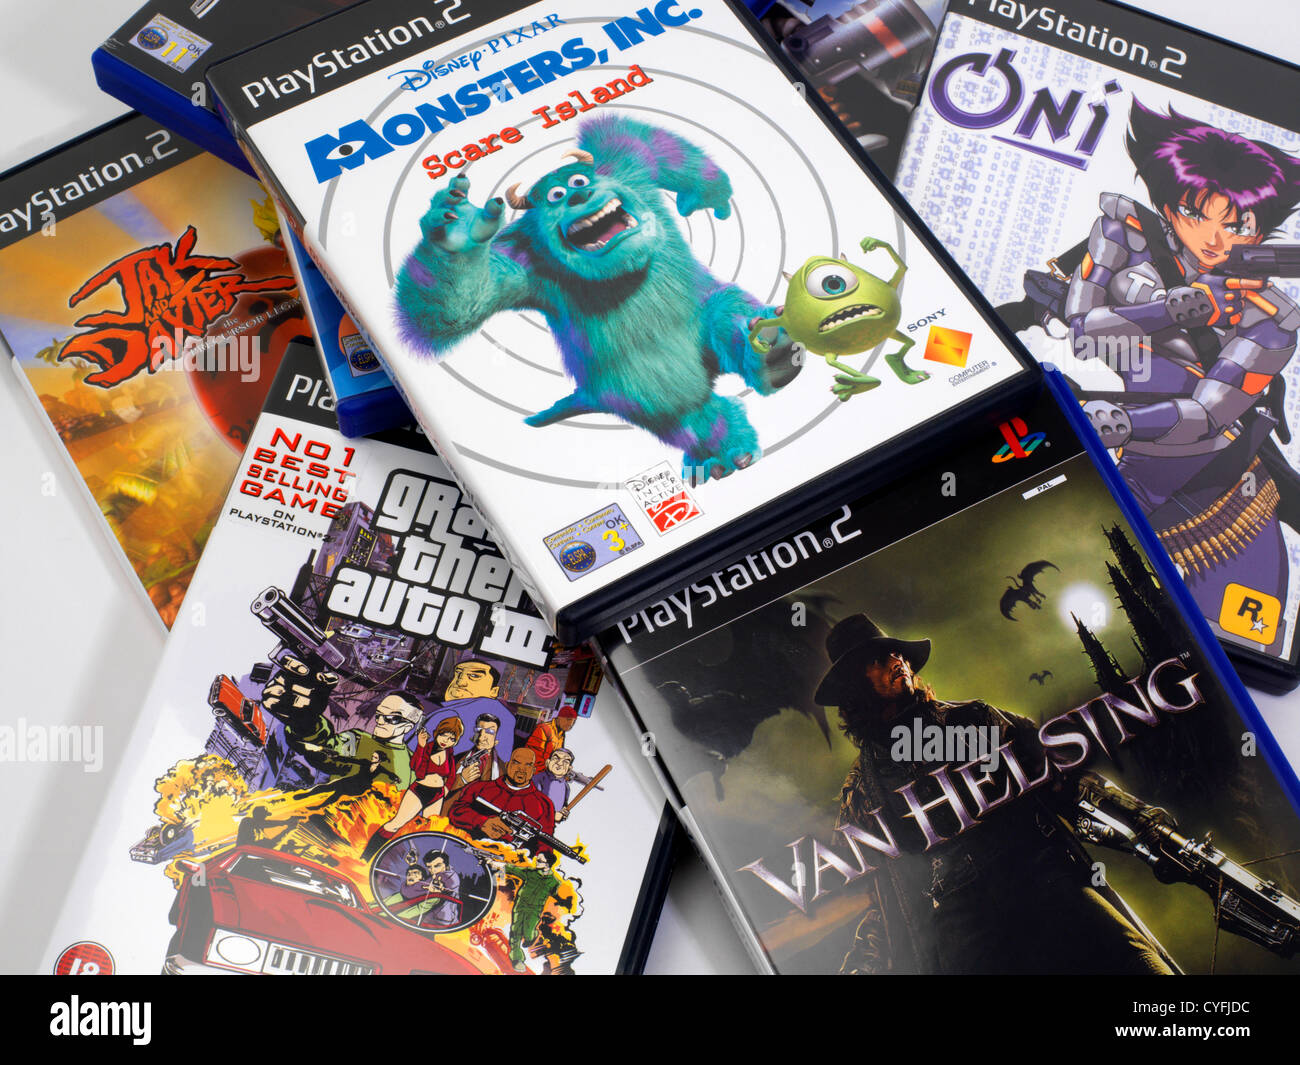 Playstation 2 games immagini e fotografie stock ad alta risoluzione - Alamy